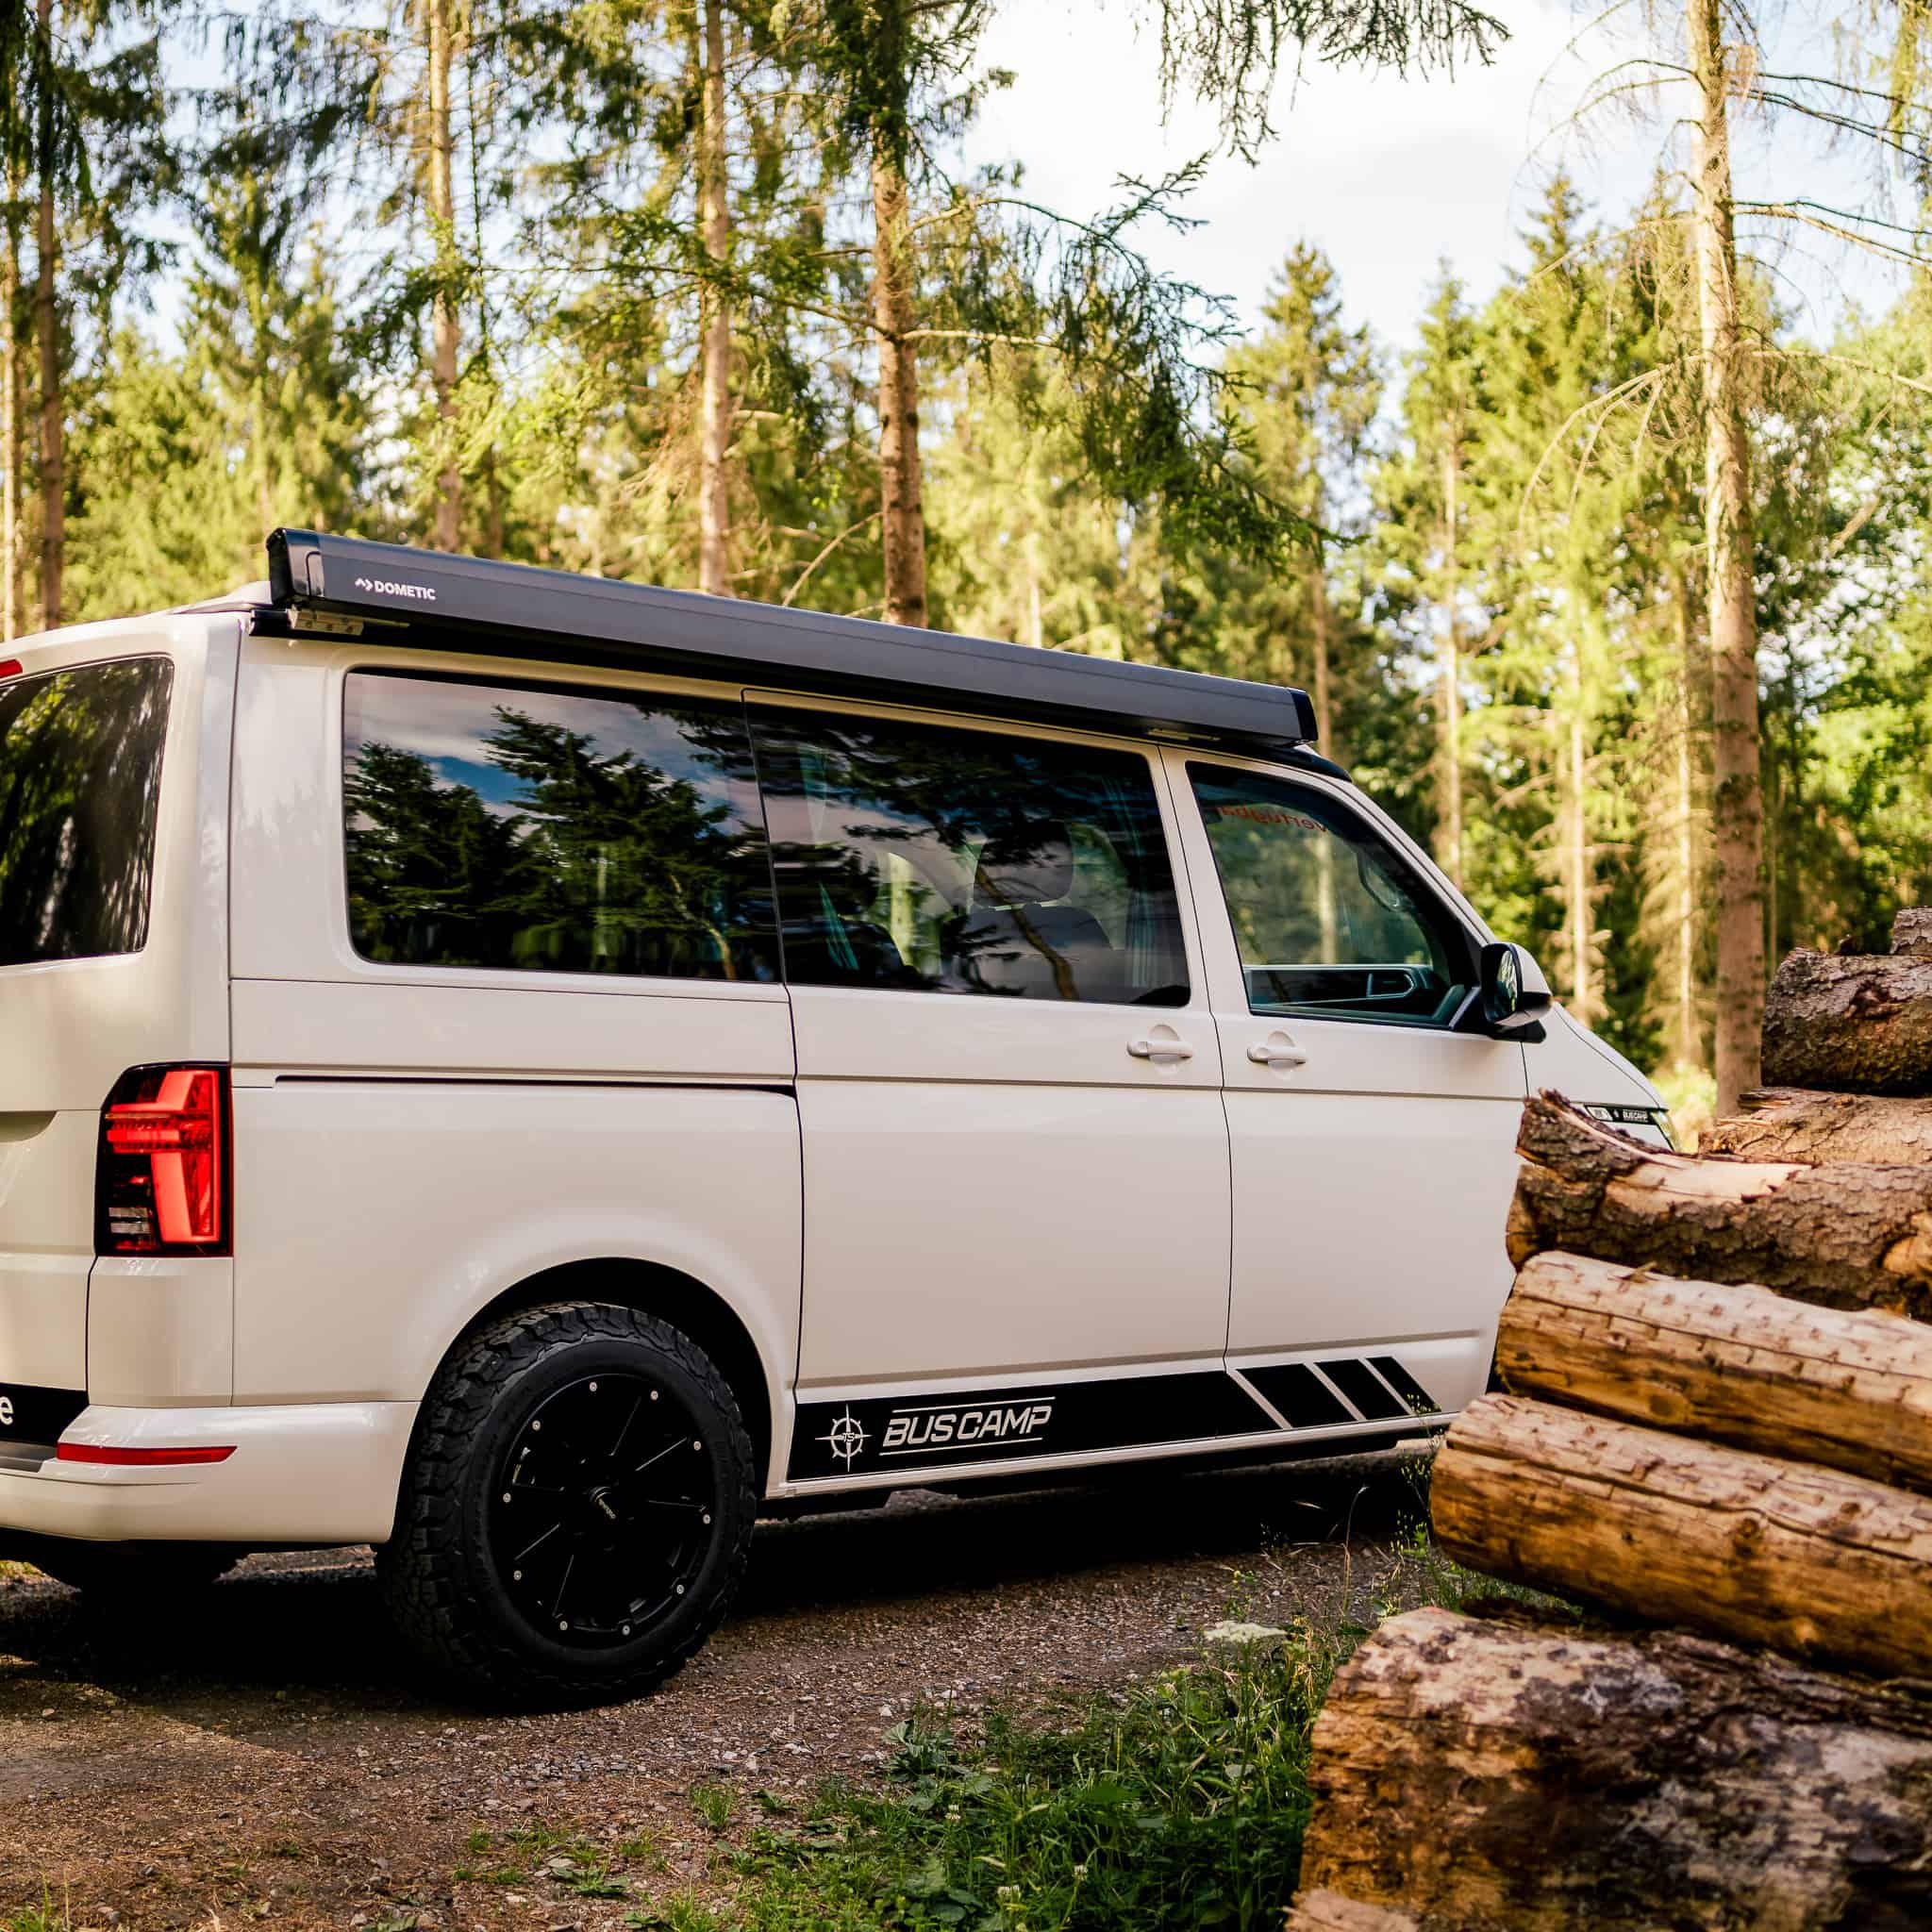 Vollständig ausgebaute VW Camper Vans vom Profi - TS BusCamp